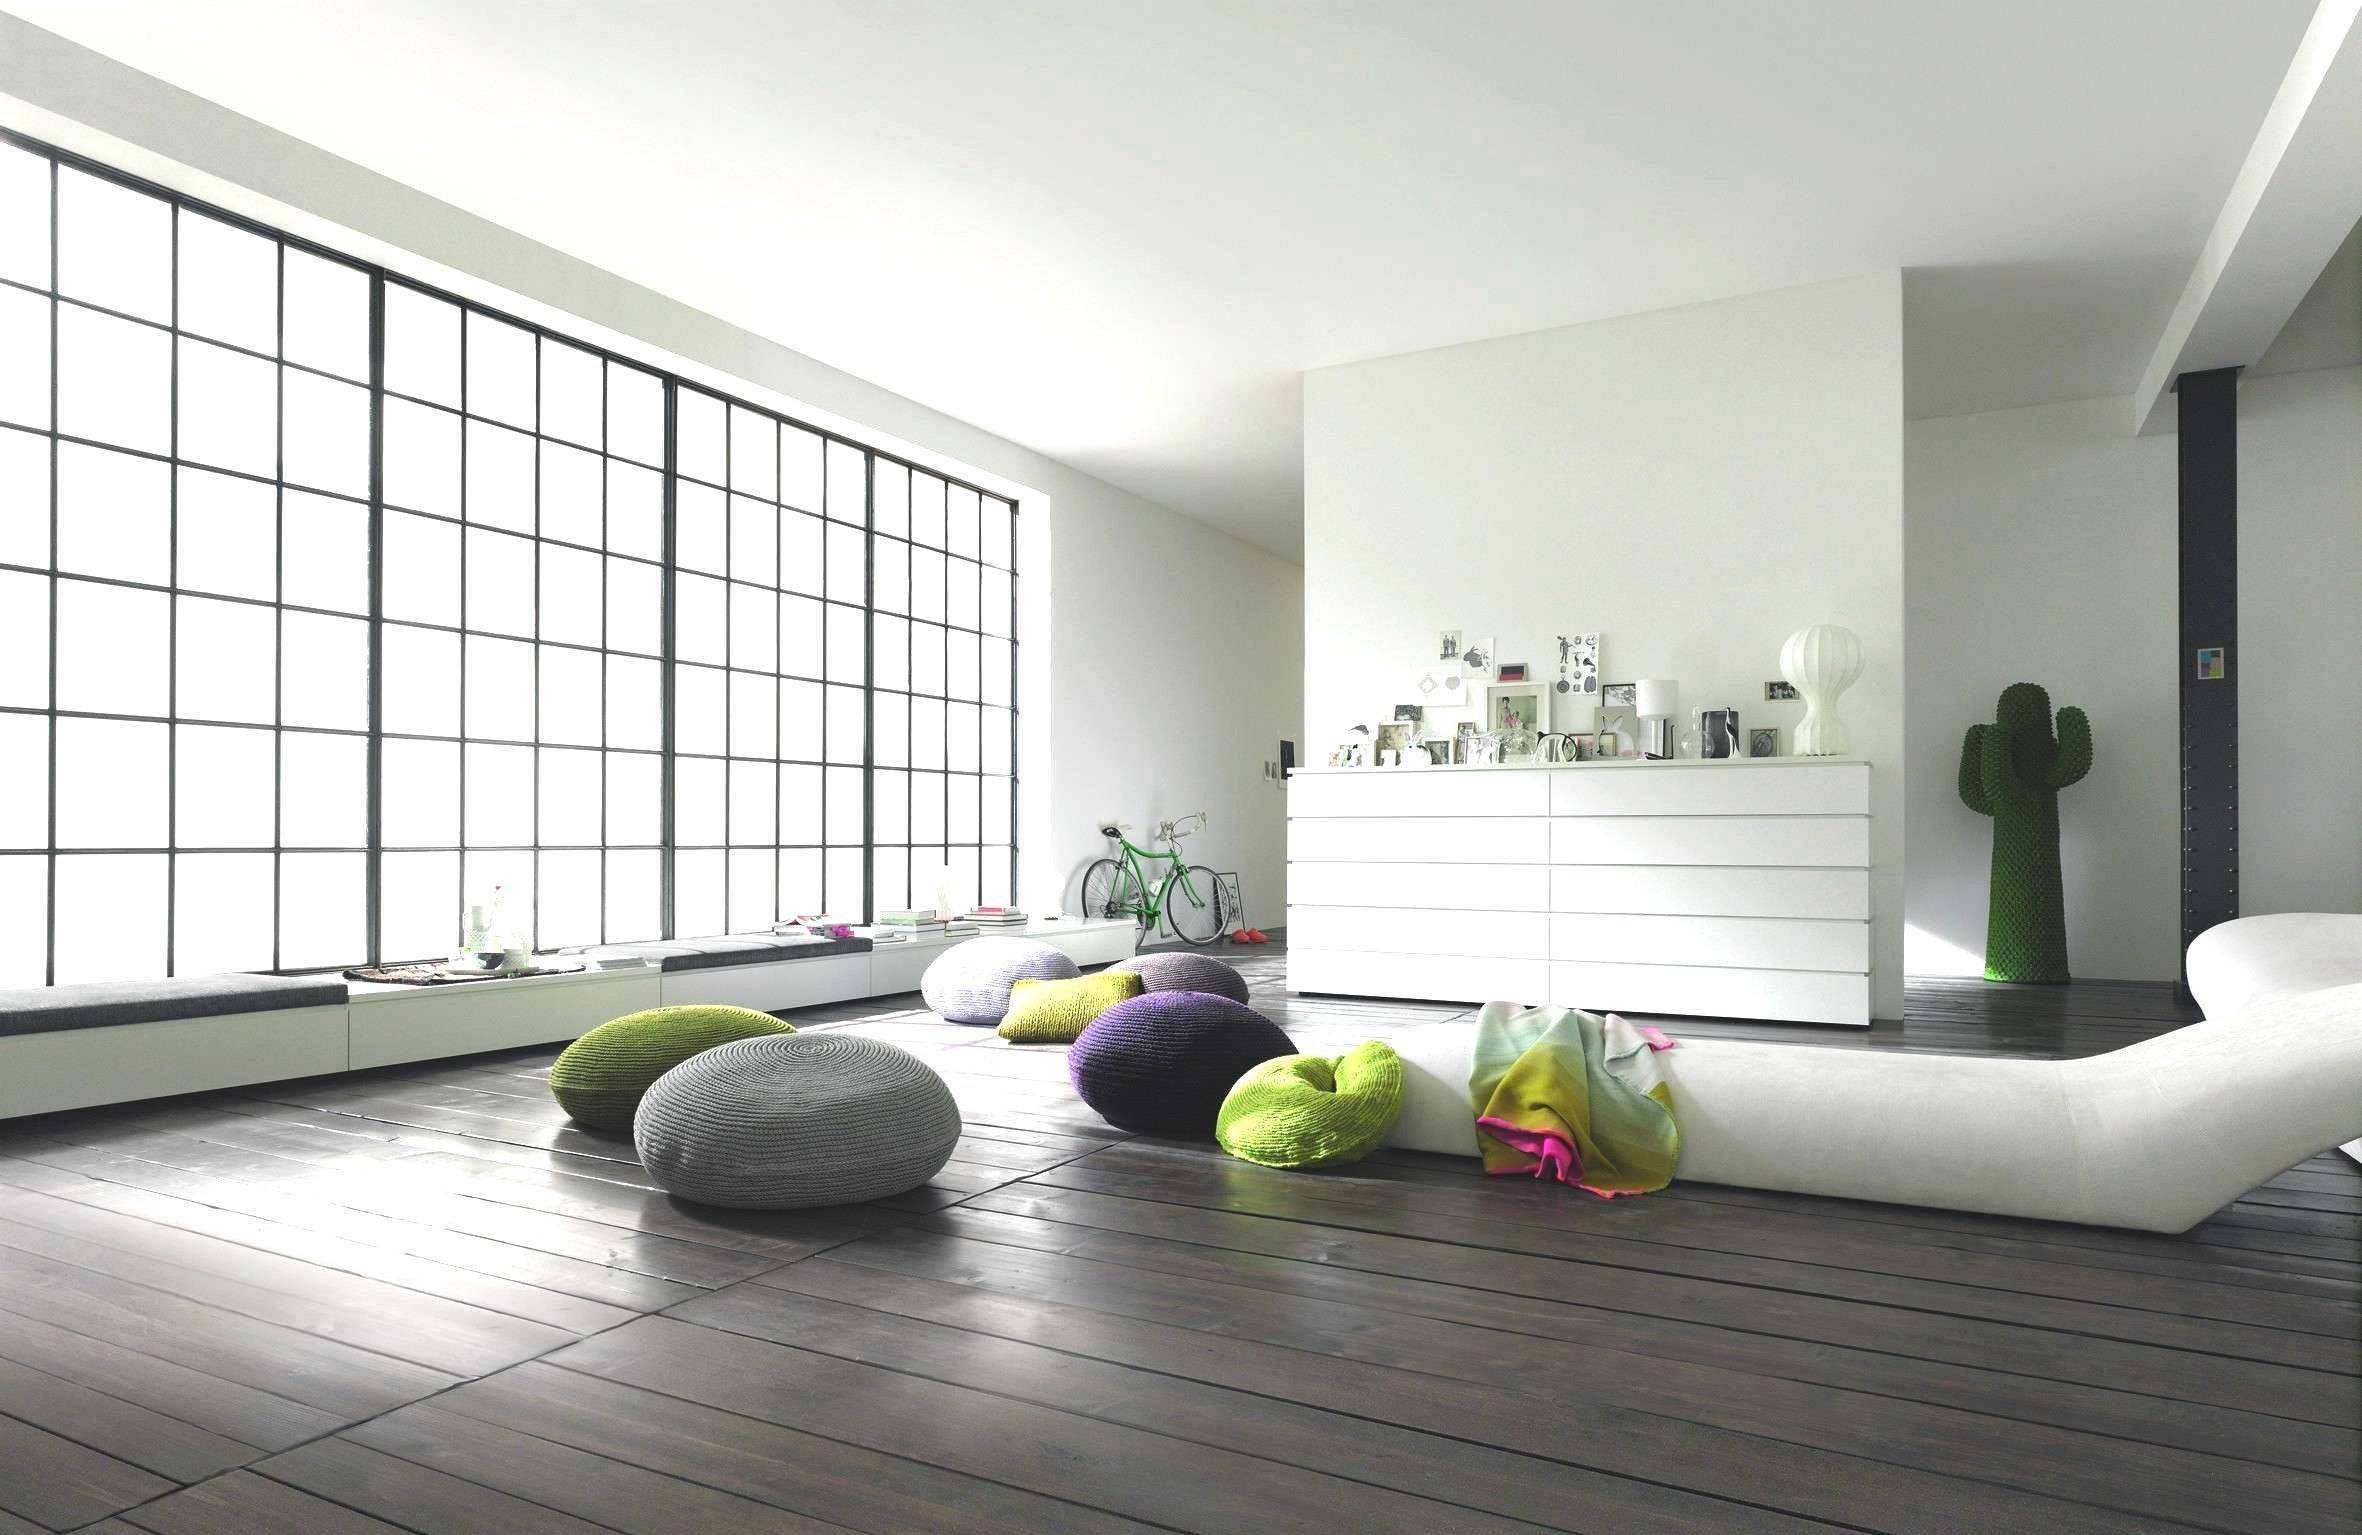 wohnzimmer deko in grau luxury fresh wohnzimmer wanddeko ideen of wohnzimmer deko in grau